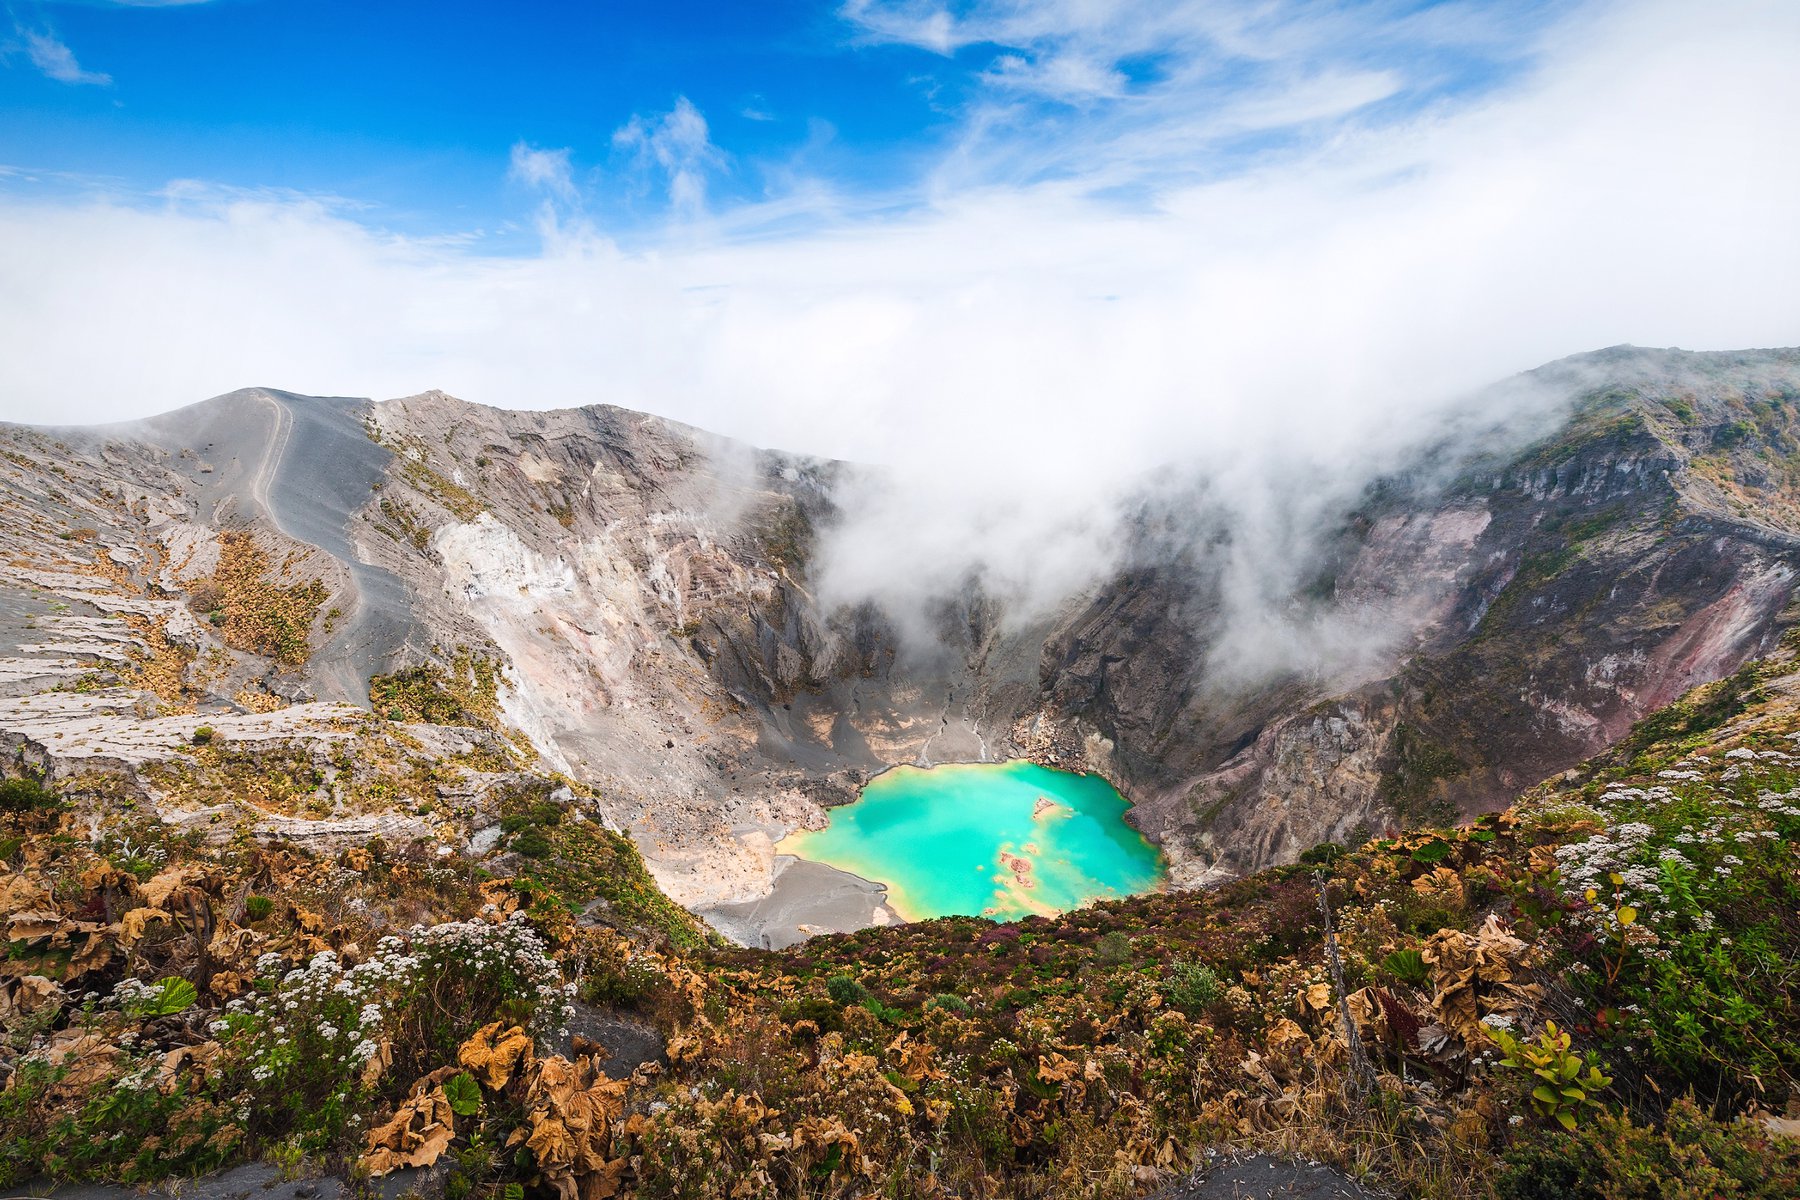 Du besöker vulkanen Irazú och dess smaragdgröna kratersjö